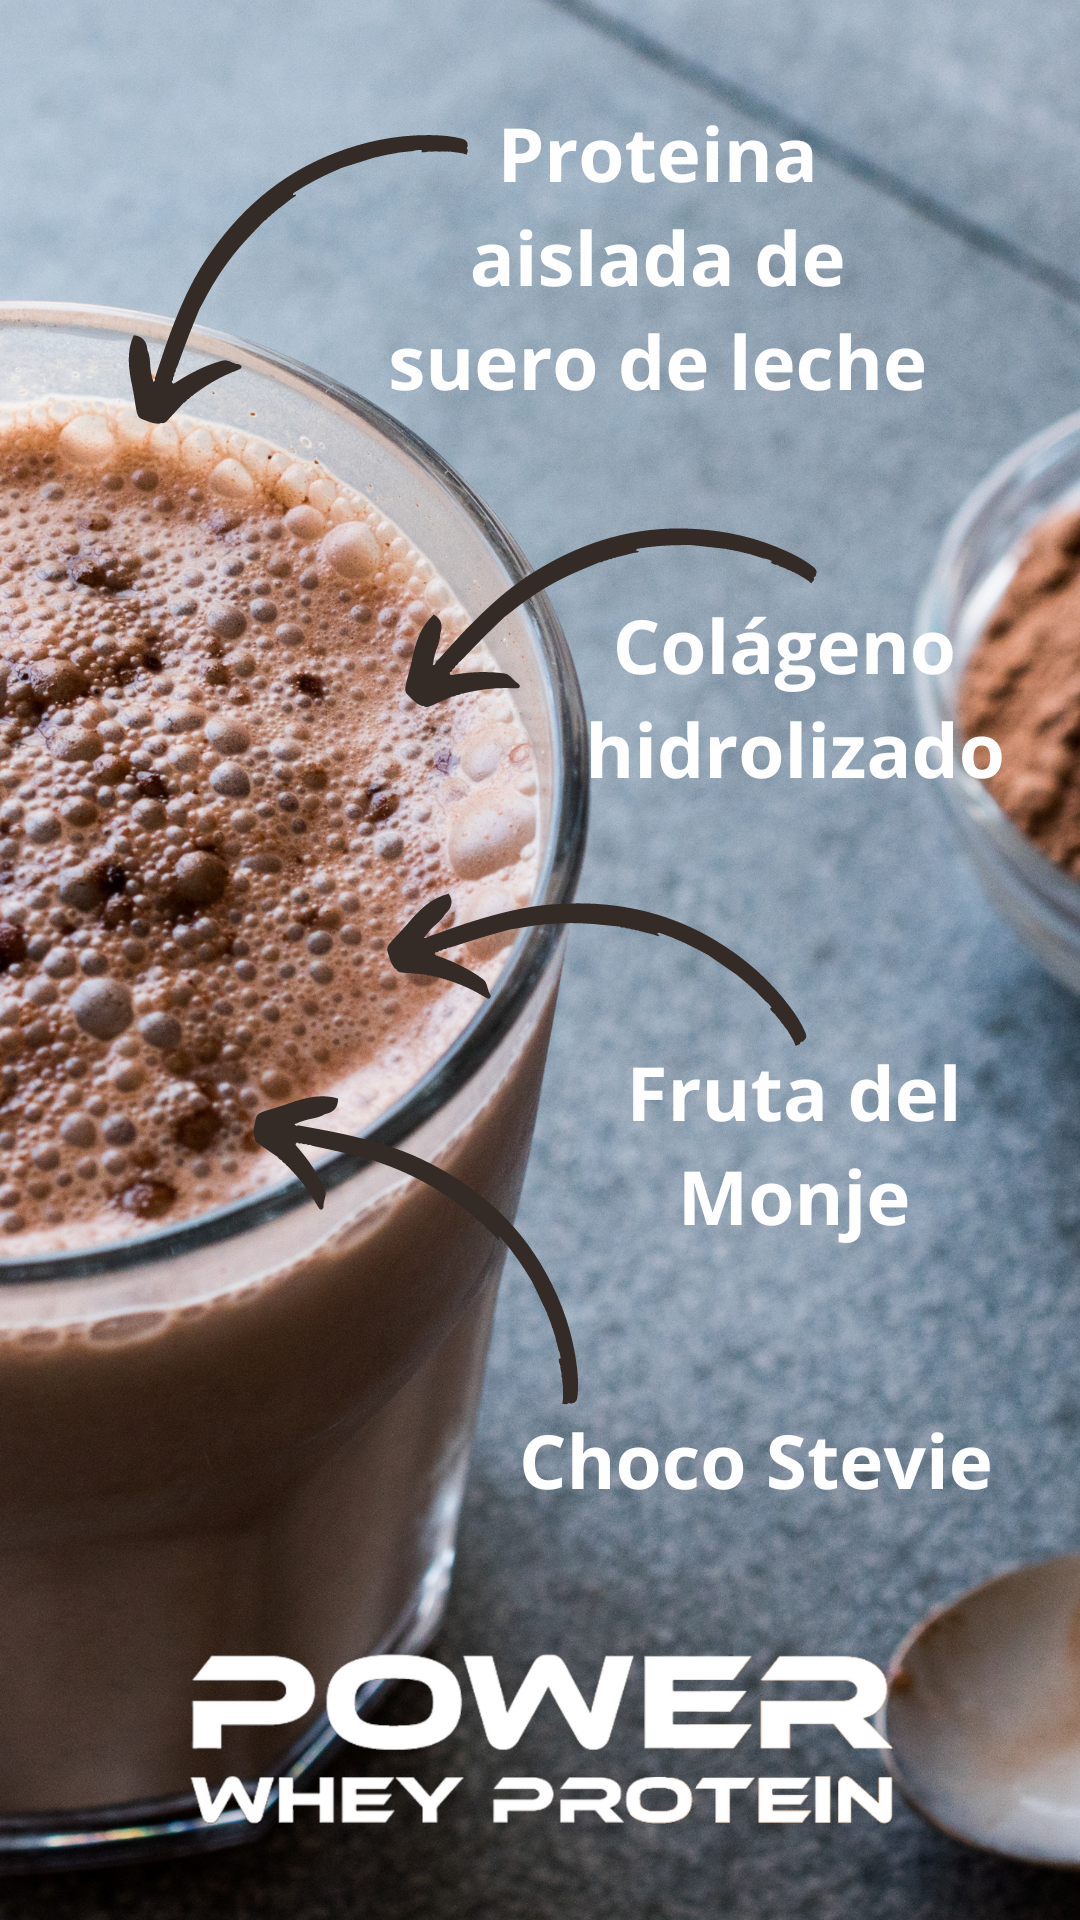 Proteína en Polvo de Chocolate- Keto, Sugar-Free